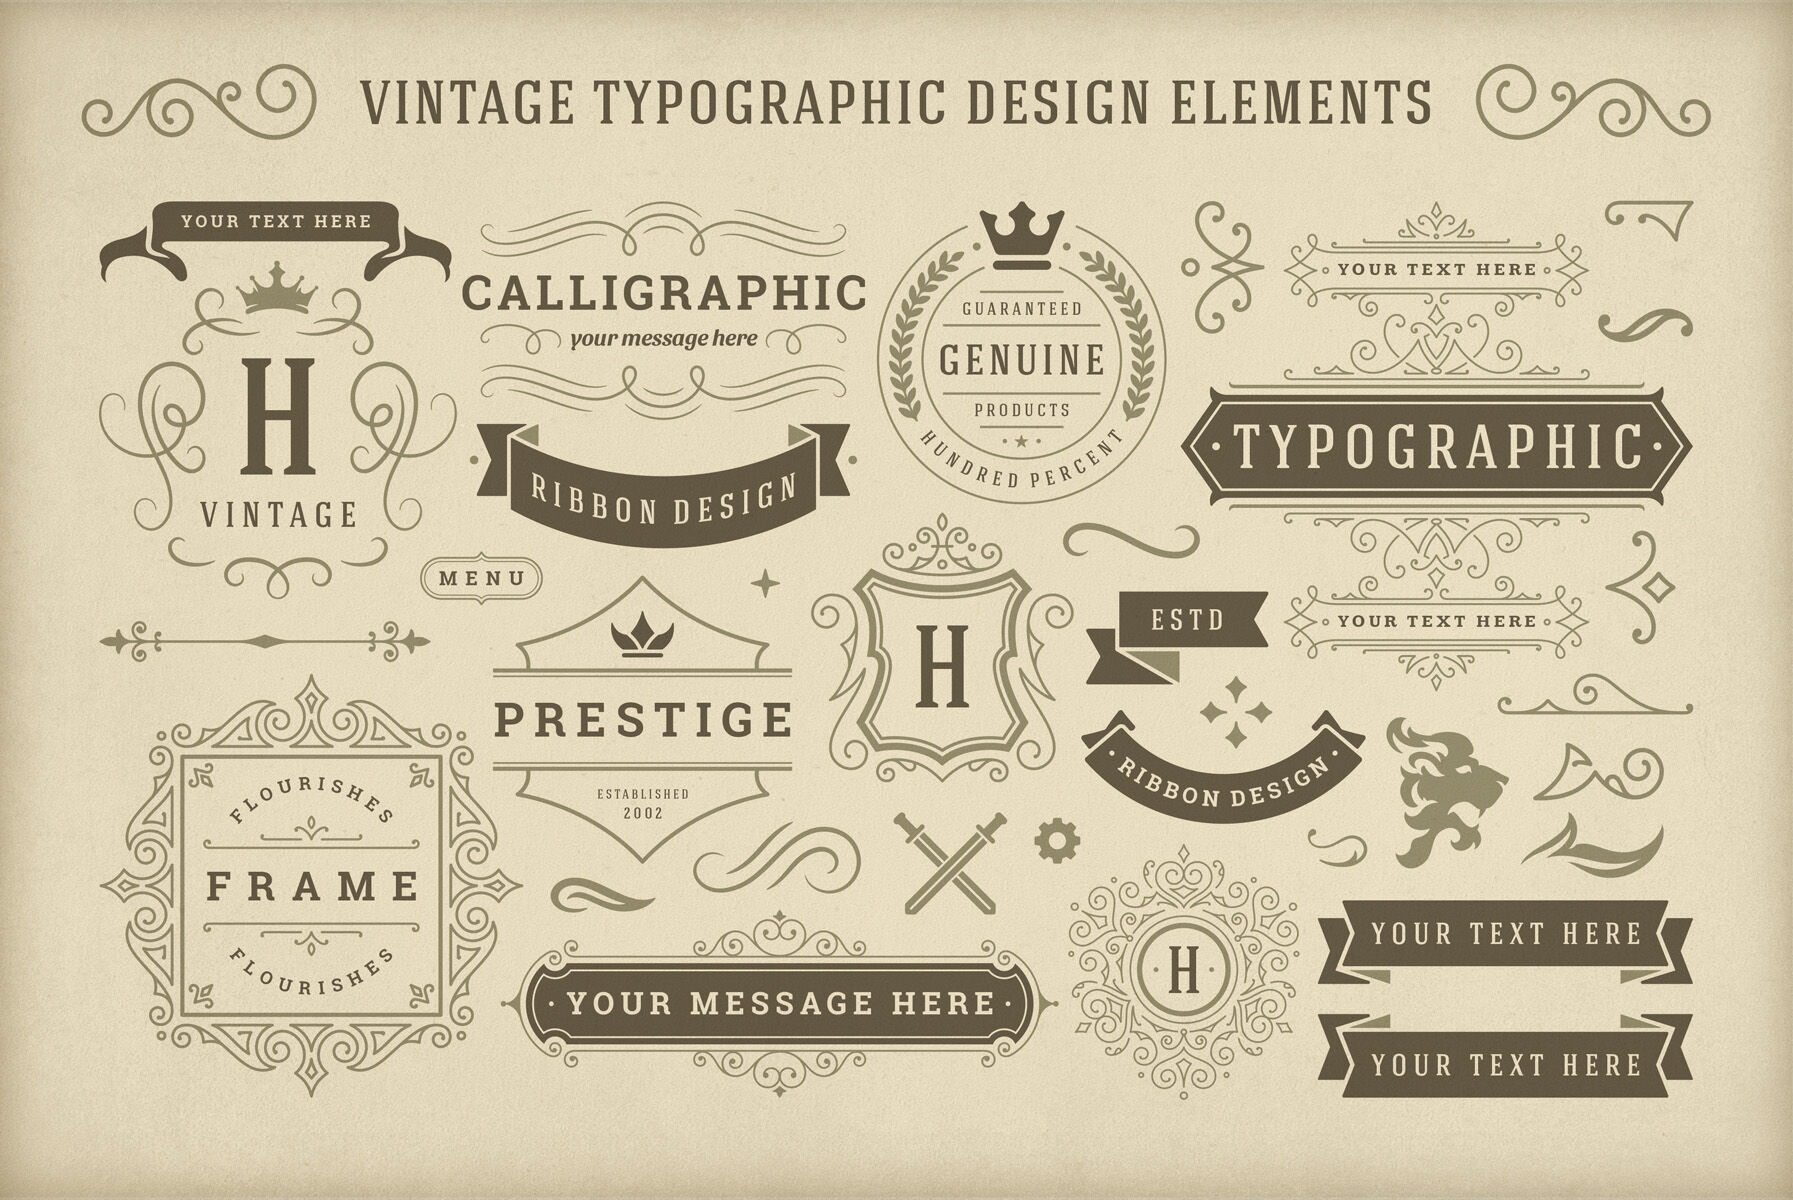 Vintage Typographic Design Elements By Vasya Kobelev | TheHungryJPEG